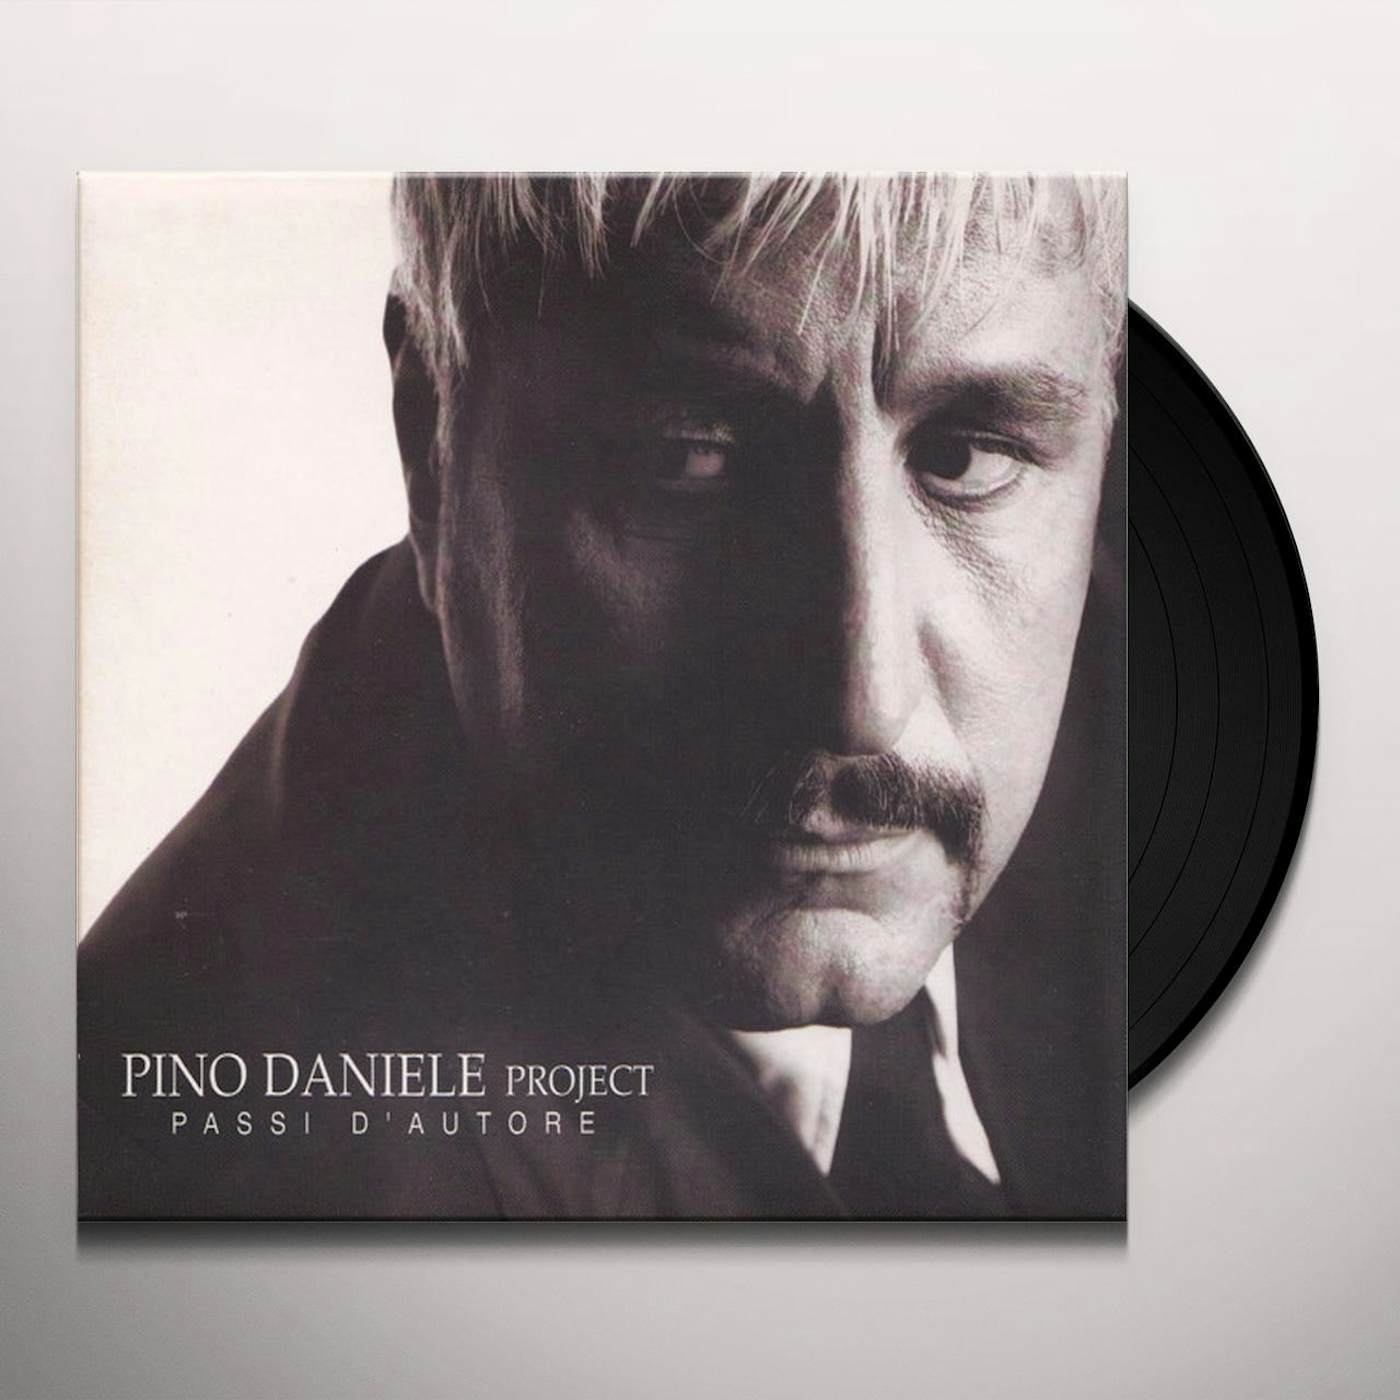 Pino Daniele Passi D'Autore Vinyl Record